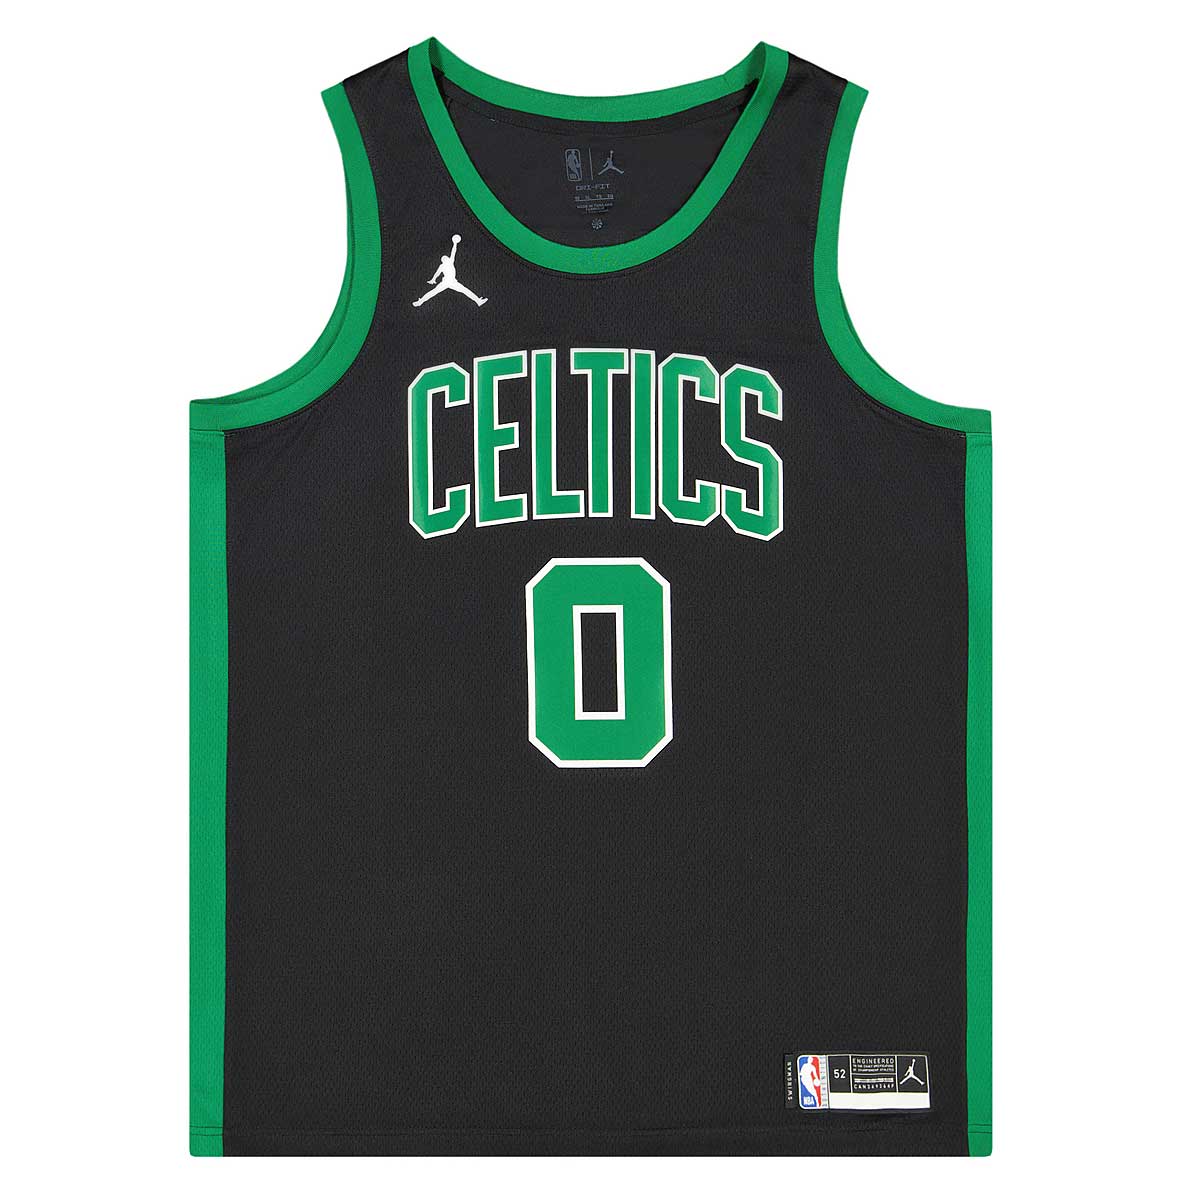 Nike Boston Celtics Swingman Alternative Shorts Black